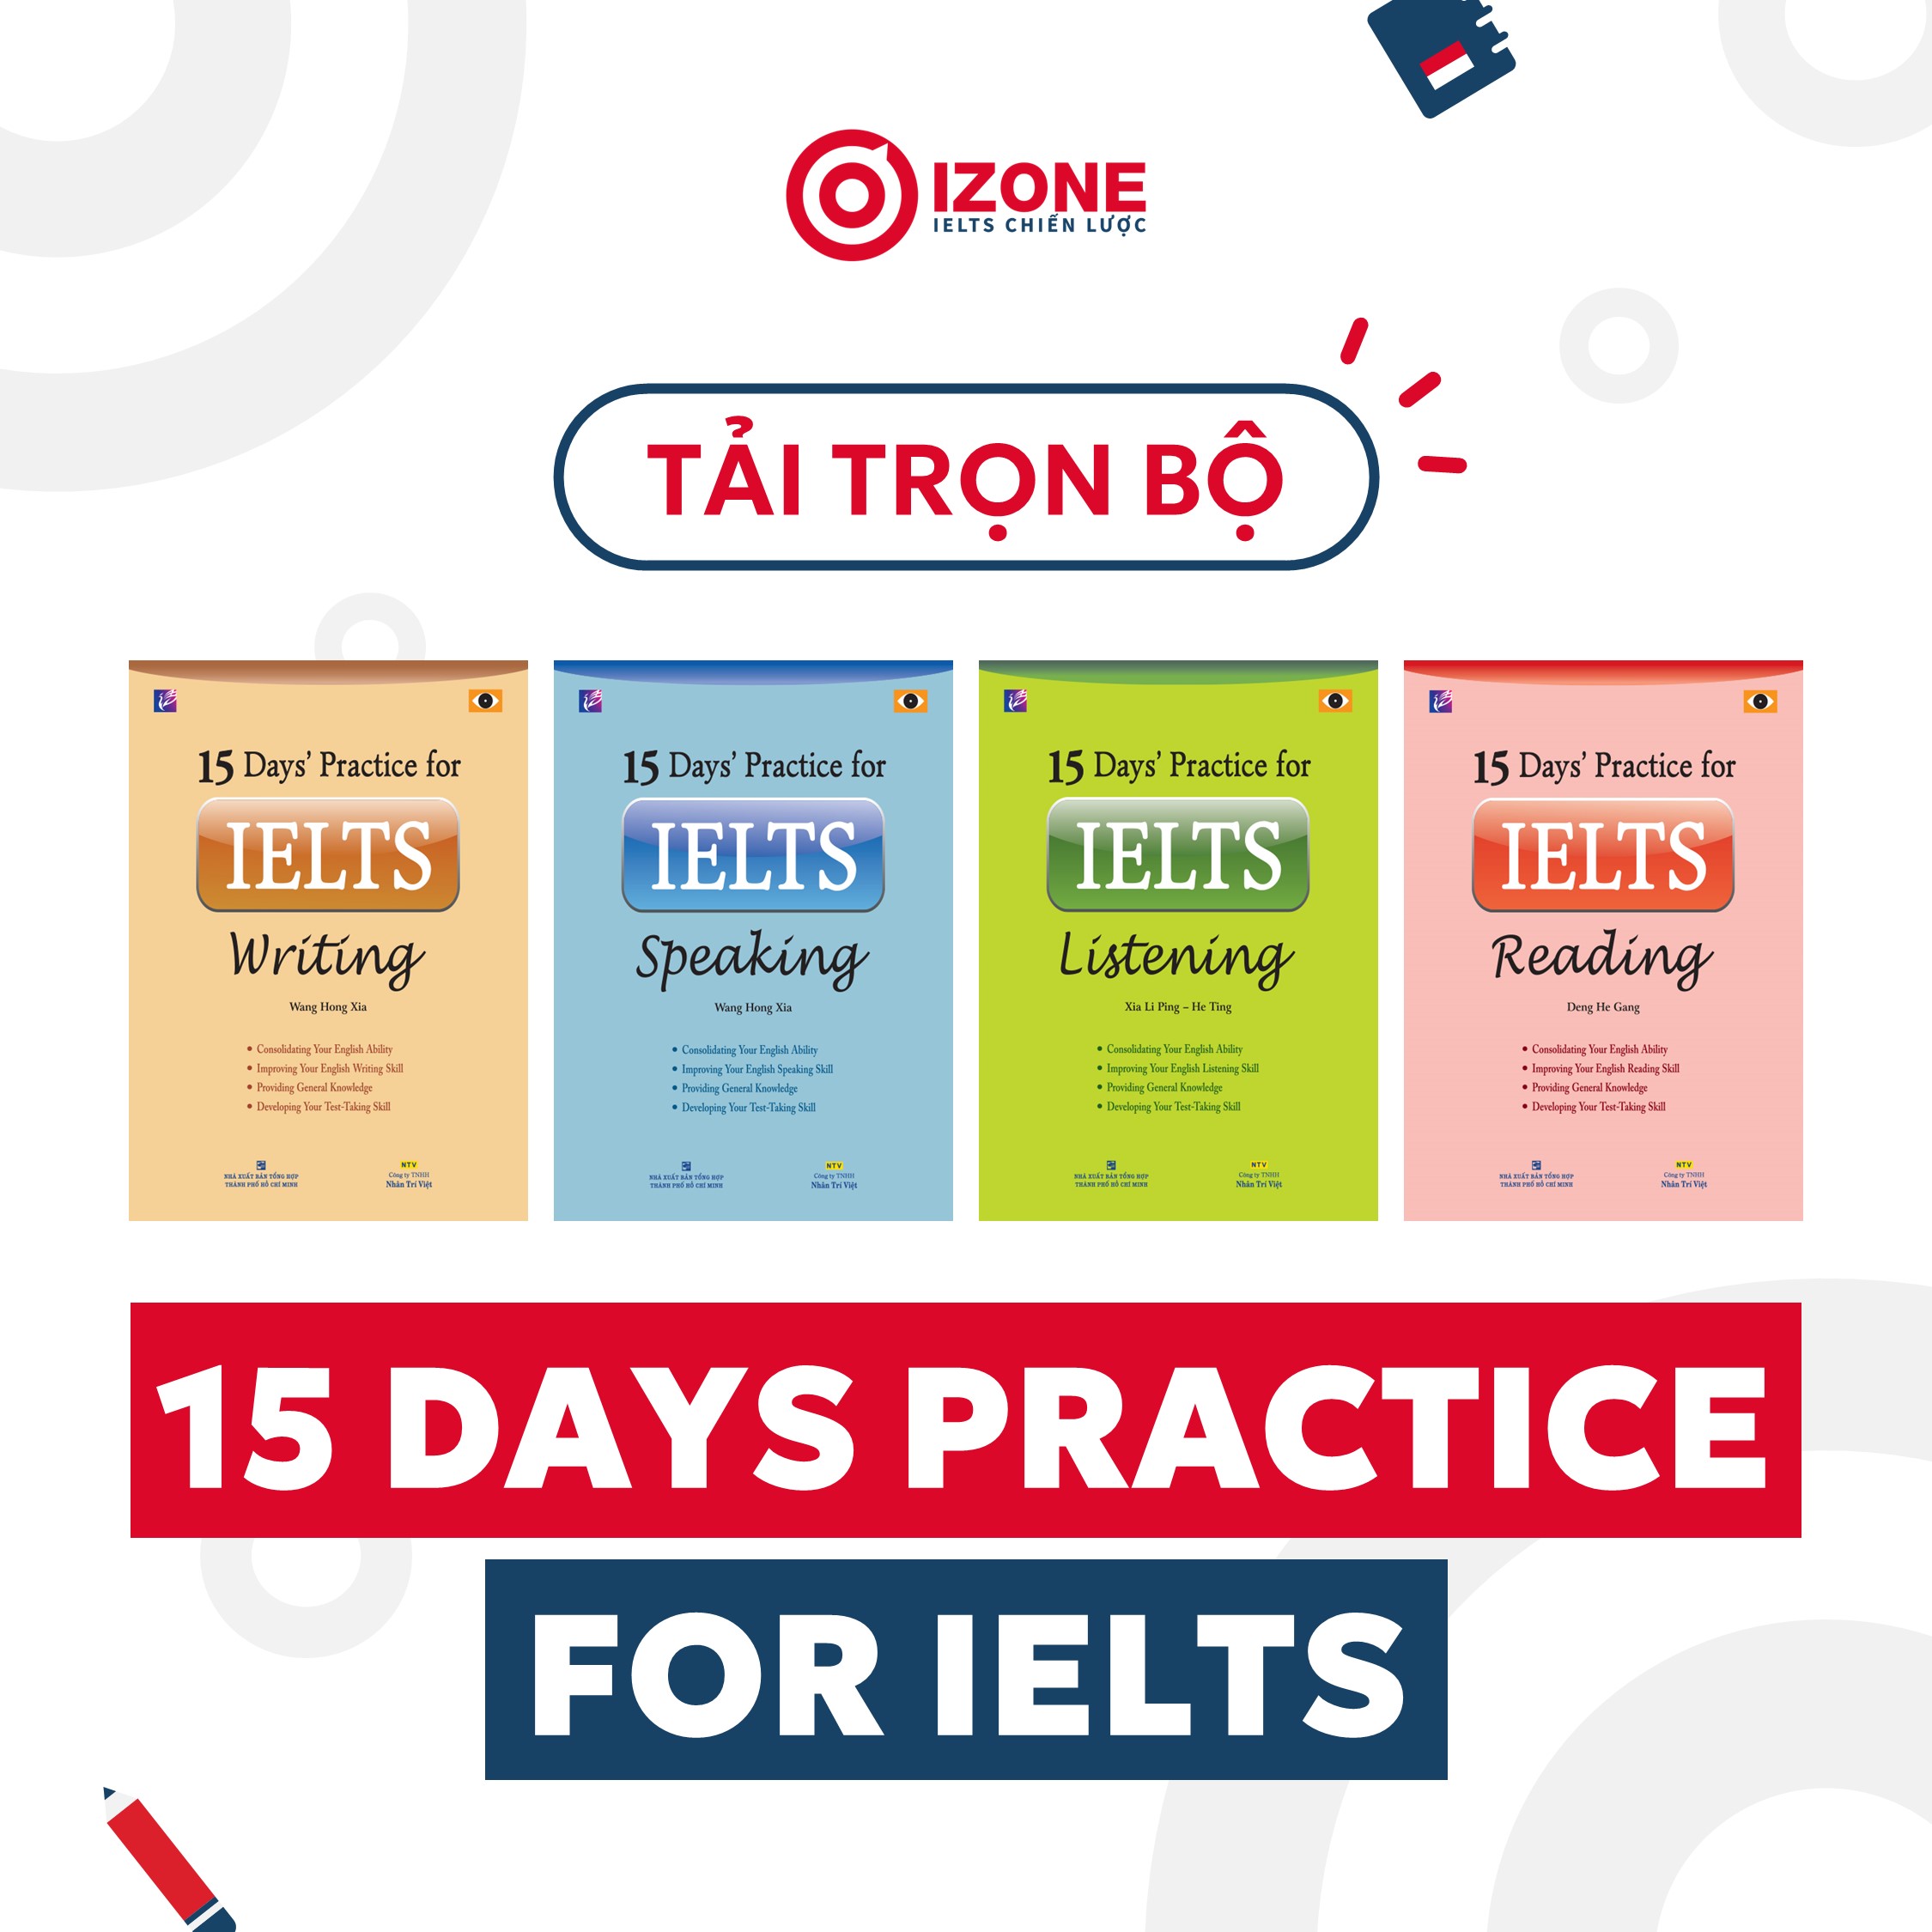 Tải trọn bộ 15 days practice for IELTS bản đẹp kèm đáp án chi tiết